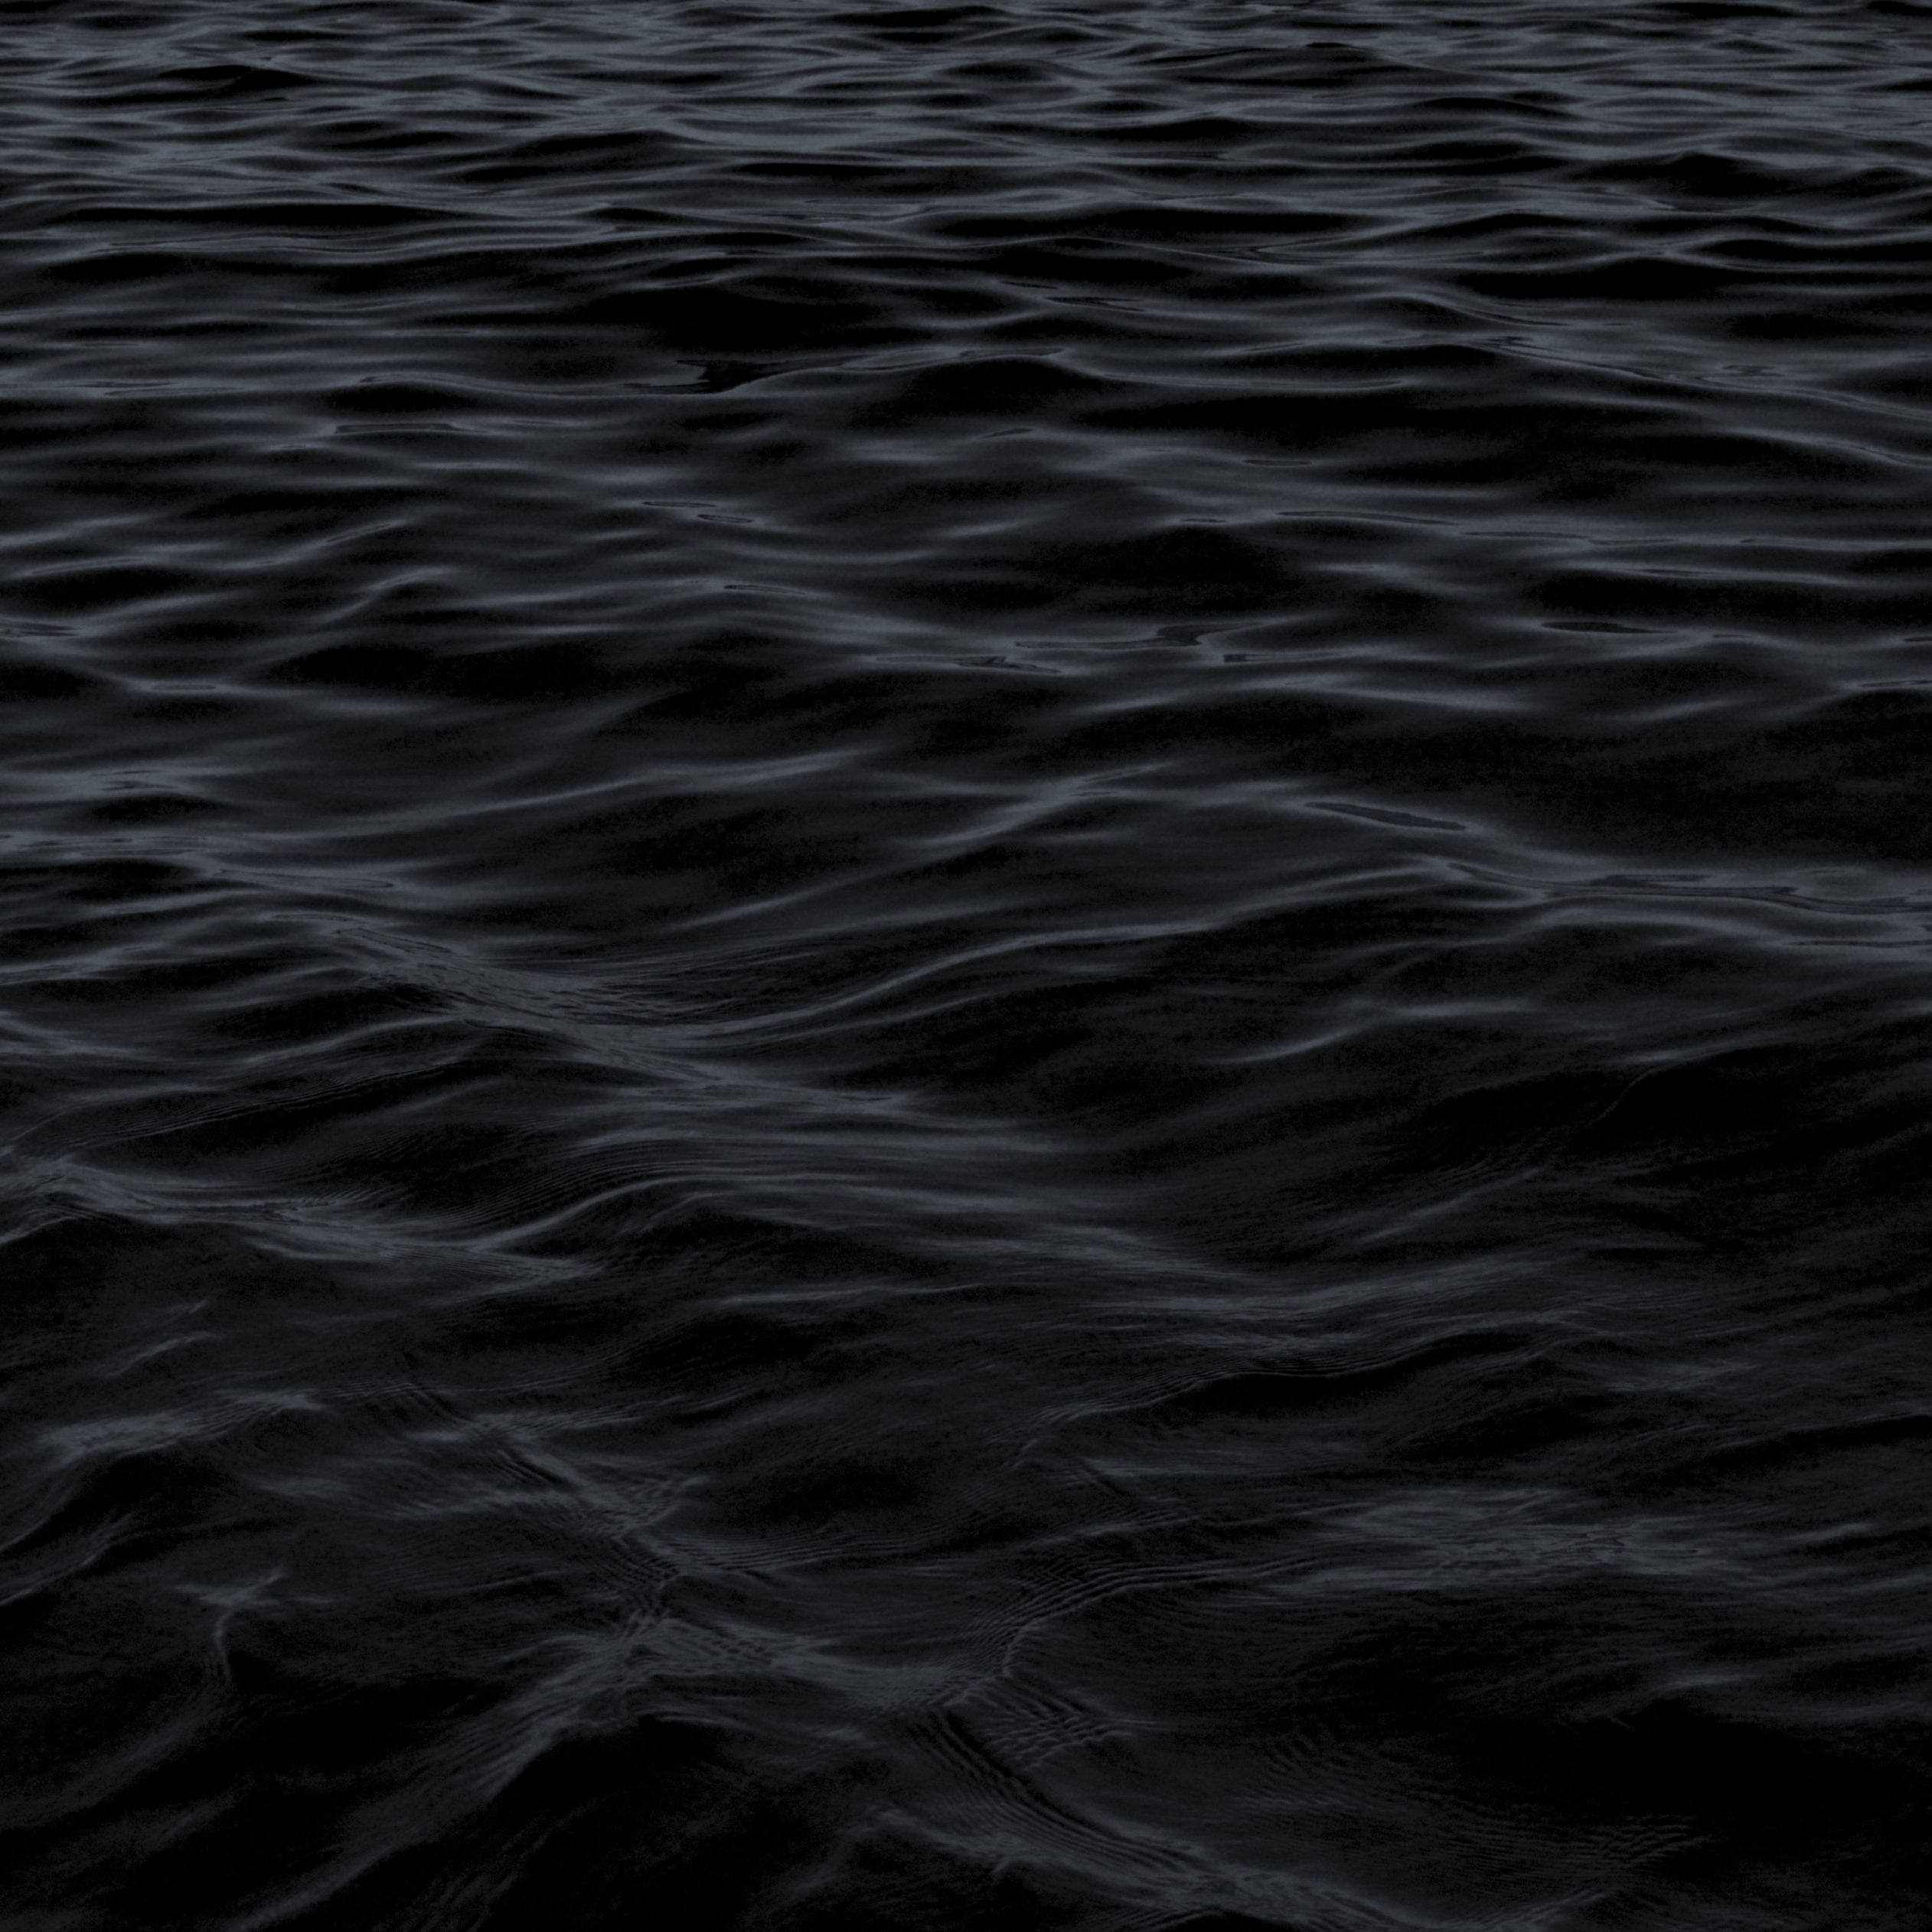 2524x2524 Parallax wallpaper 4k Dark Water Waves Sea Pattern iPad Wallpaper 2524x2524 pixels resolution